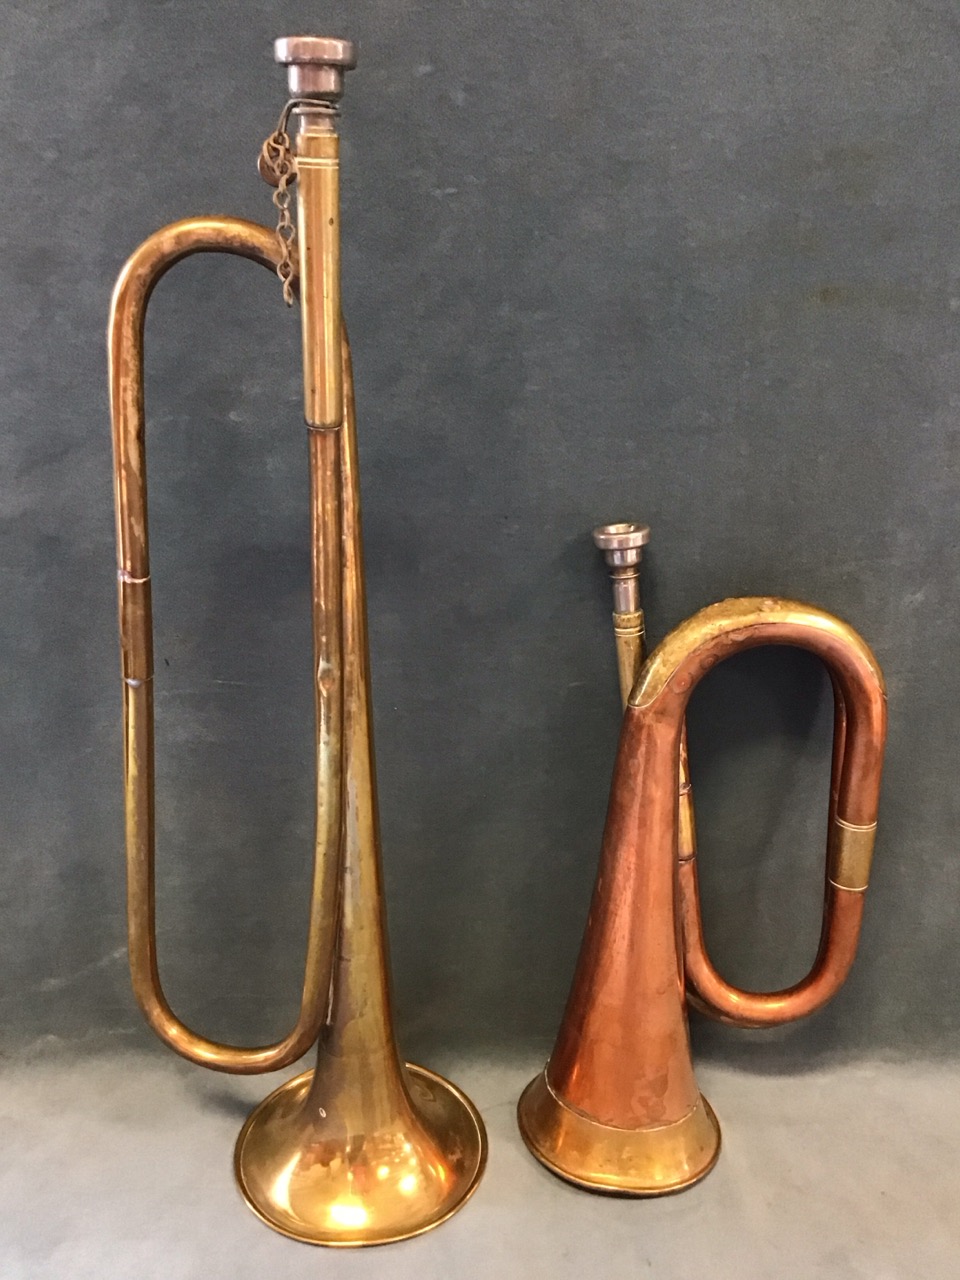 A brass valveless trumpet - 19.25in; and a copper & brass bugle - 12in. (2)